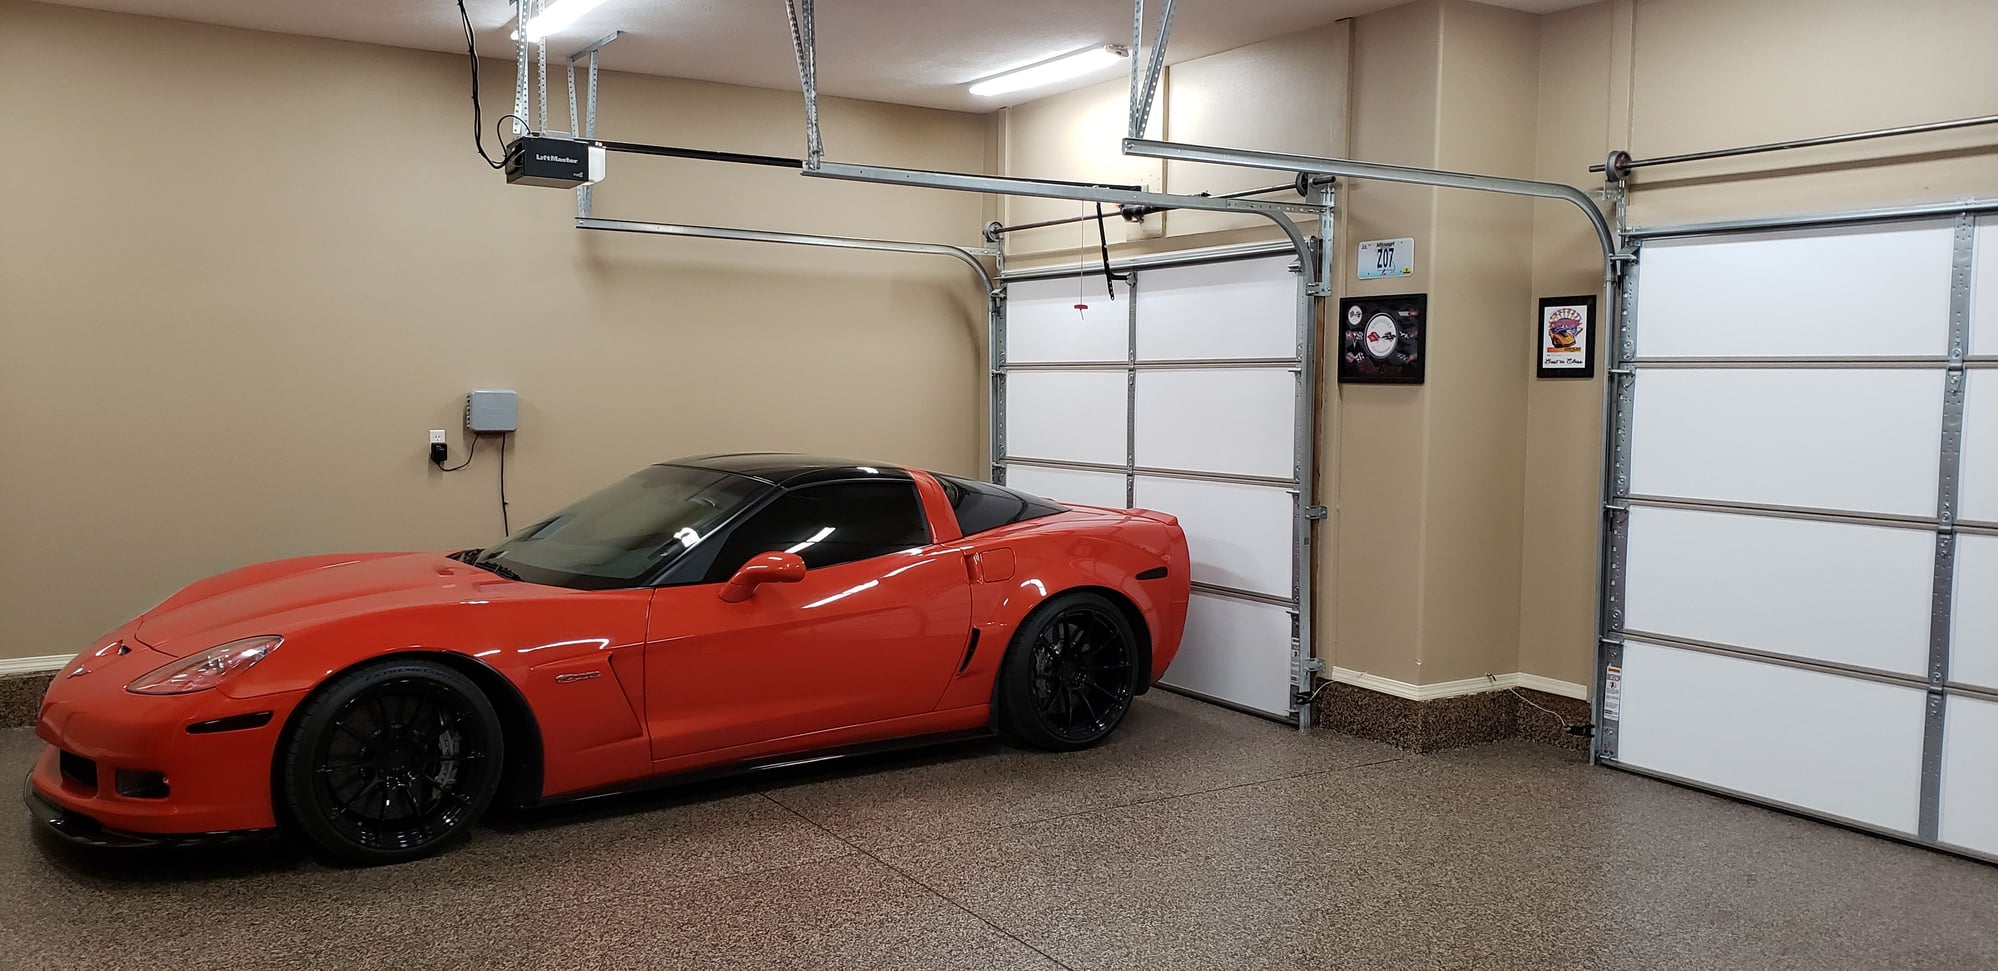 Garage rehab ideas - CorvetteForum - Chevrolet Corvette Forum Discussion